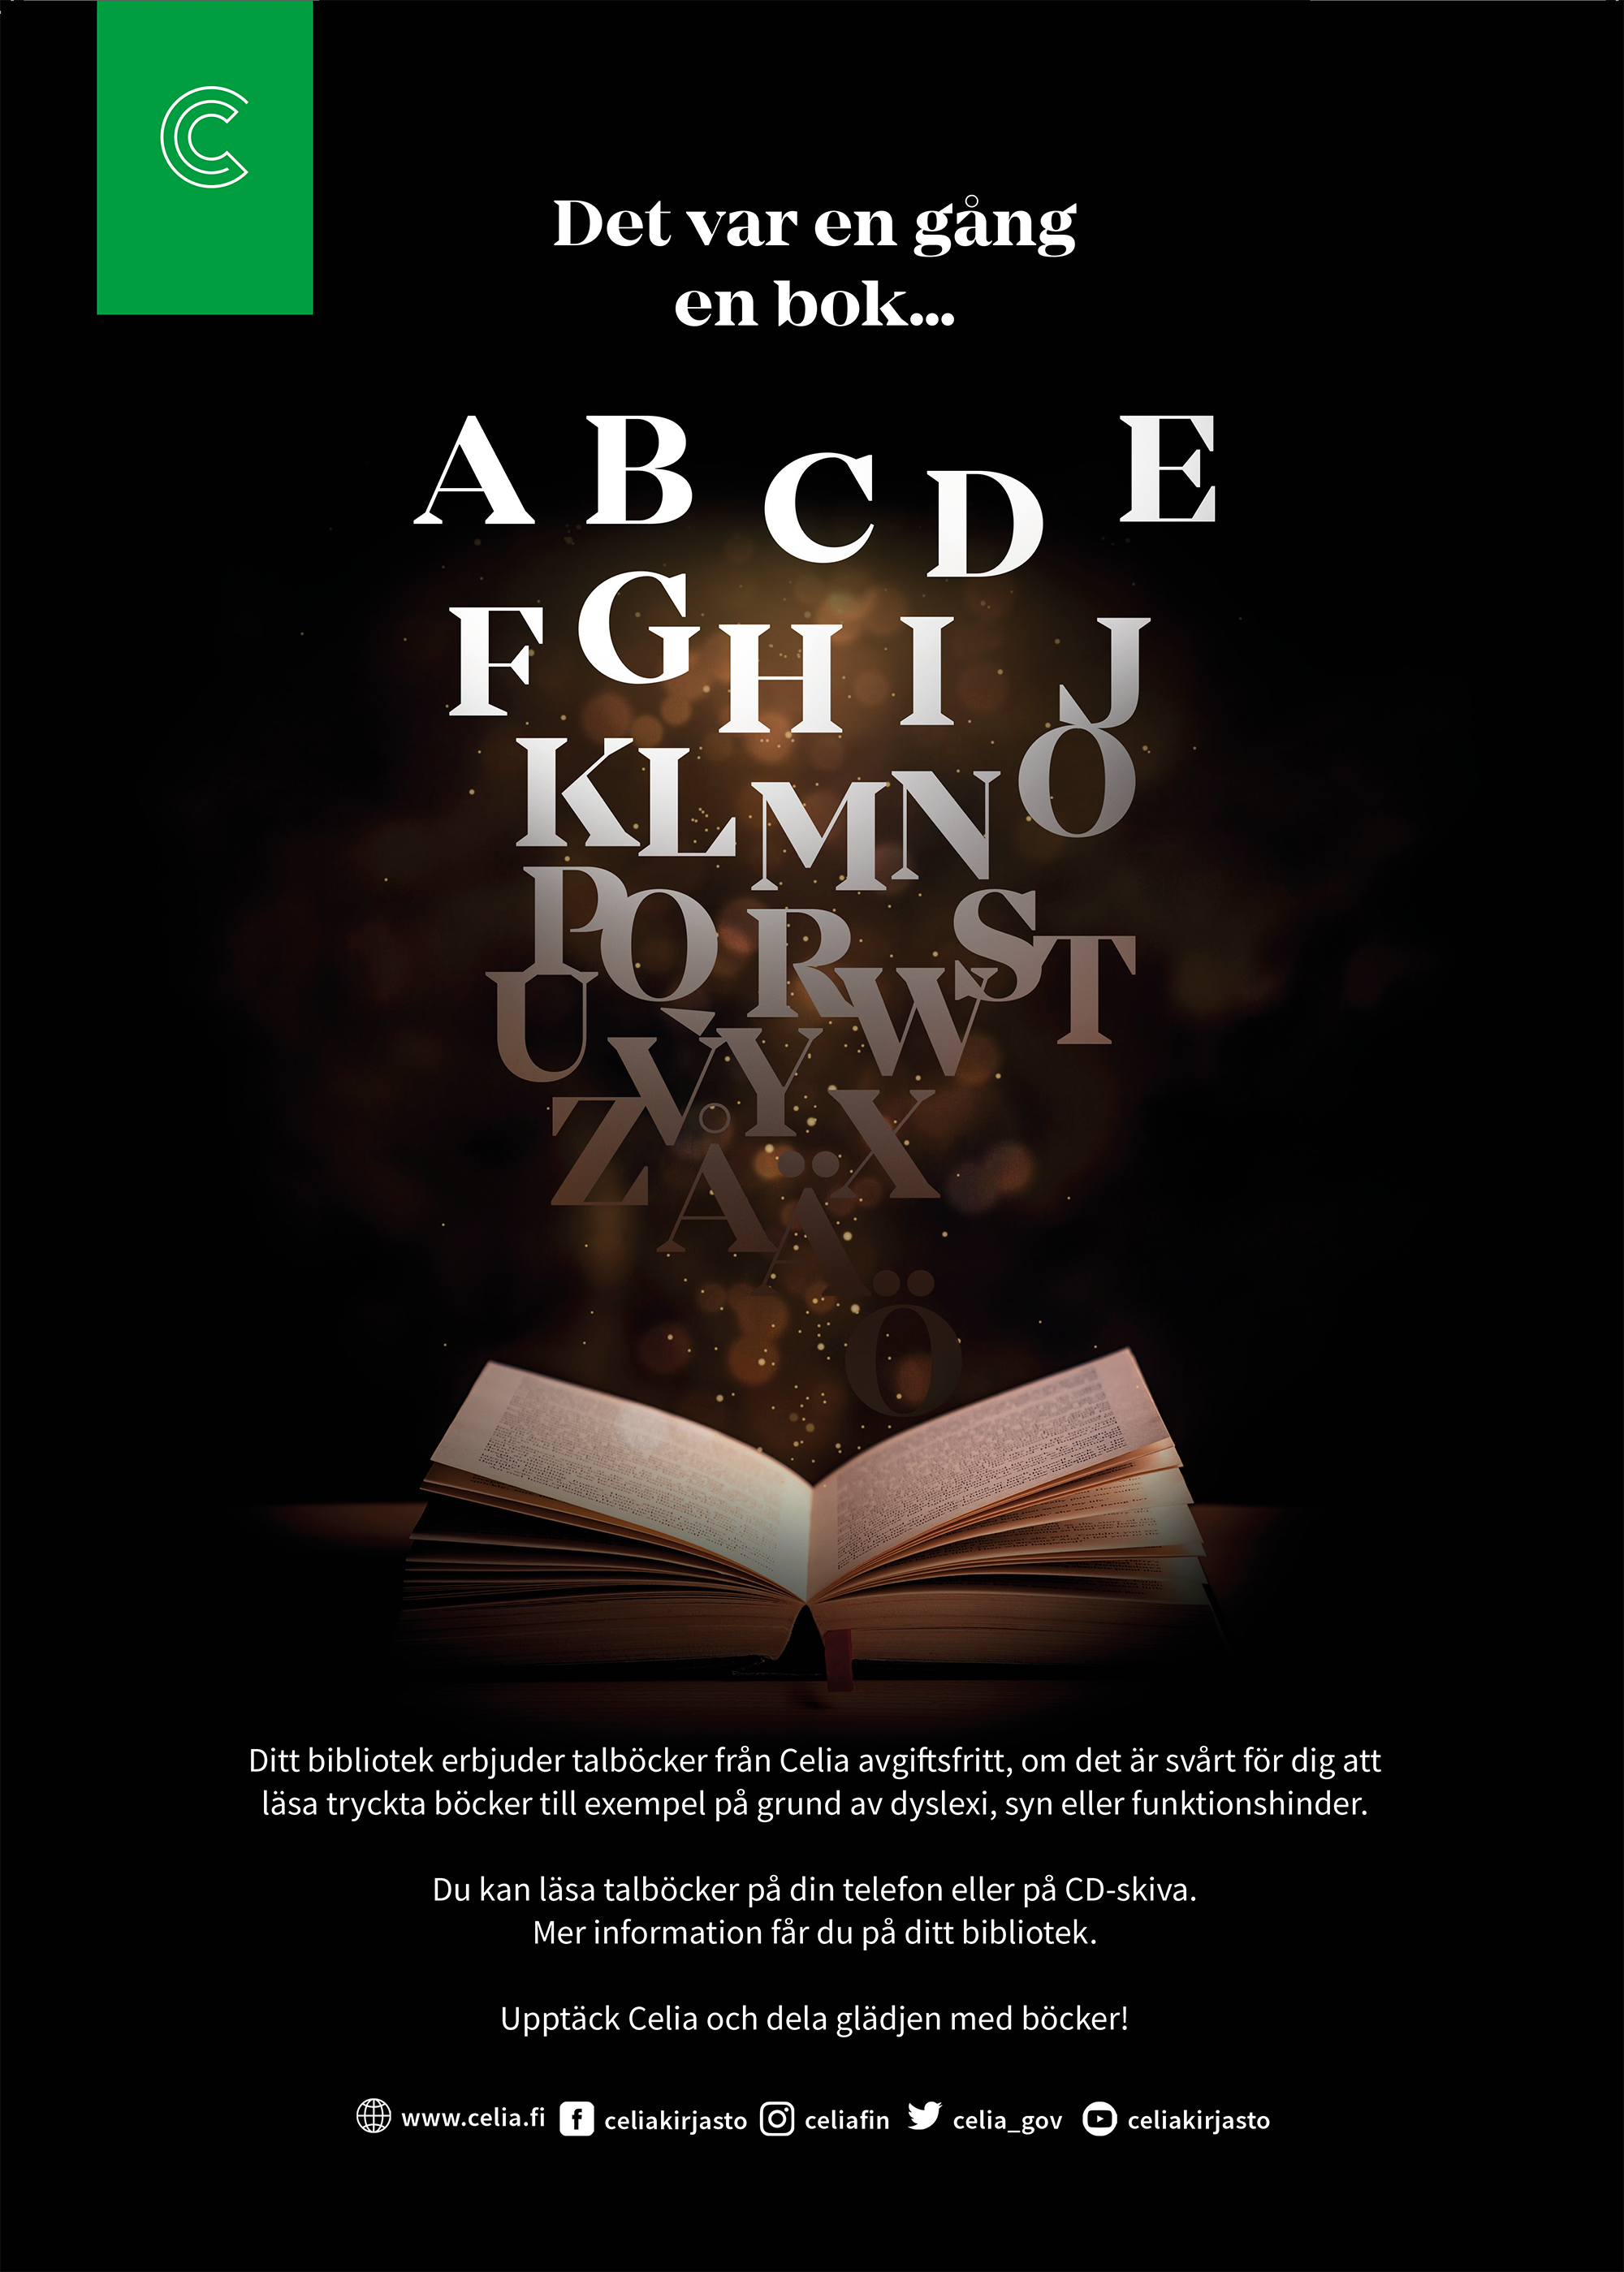 En affisch om kampanjen Det var en gång en bok. I bilden finns text för kampanjen samt en öppen bok med bokstäver som stiger uppåt ur boken.